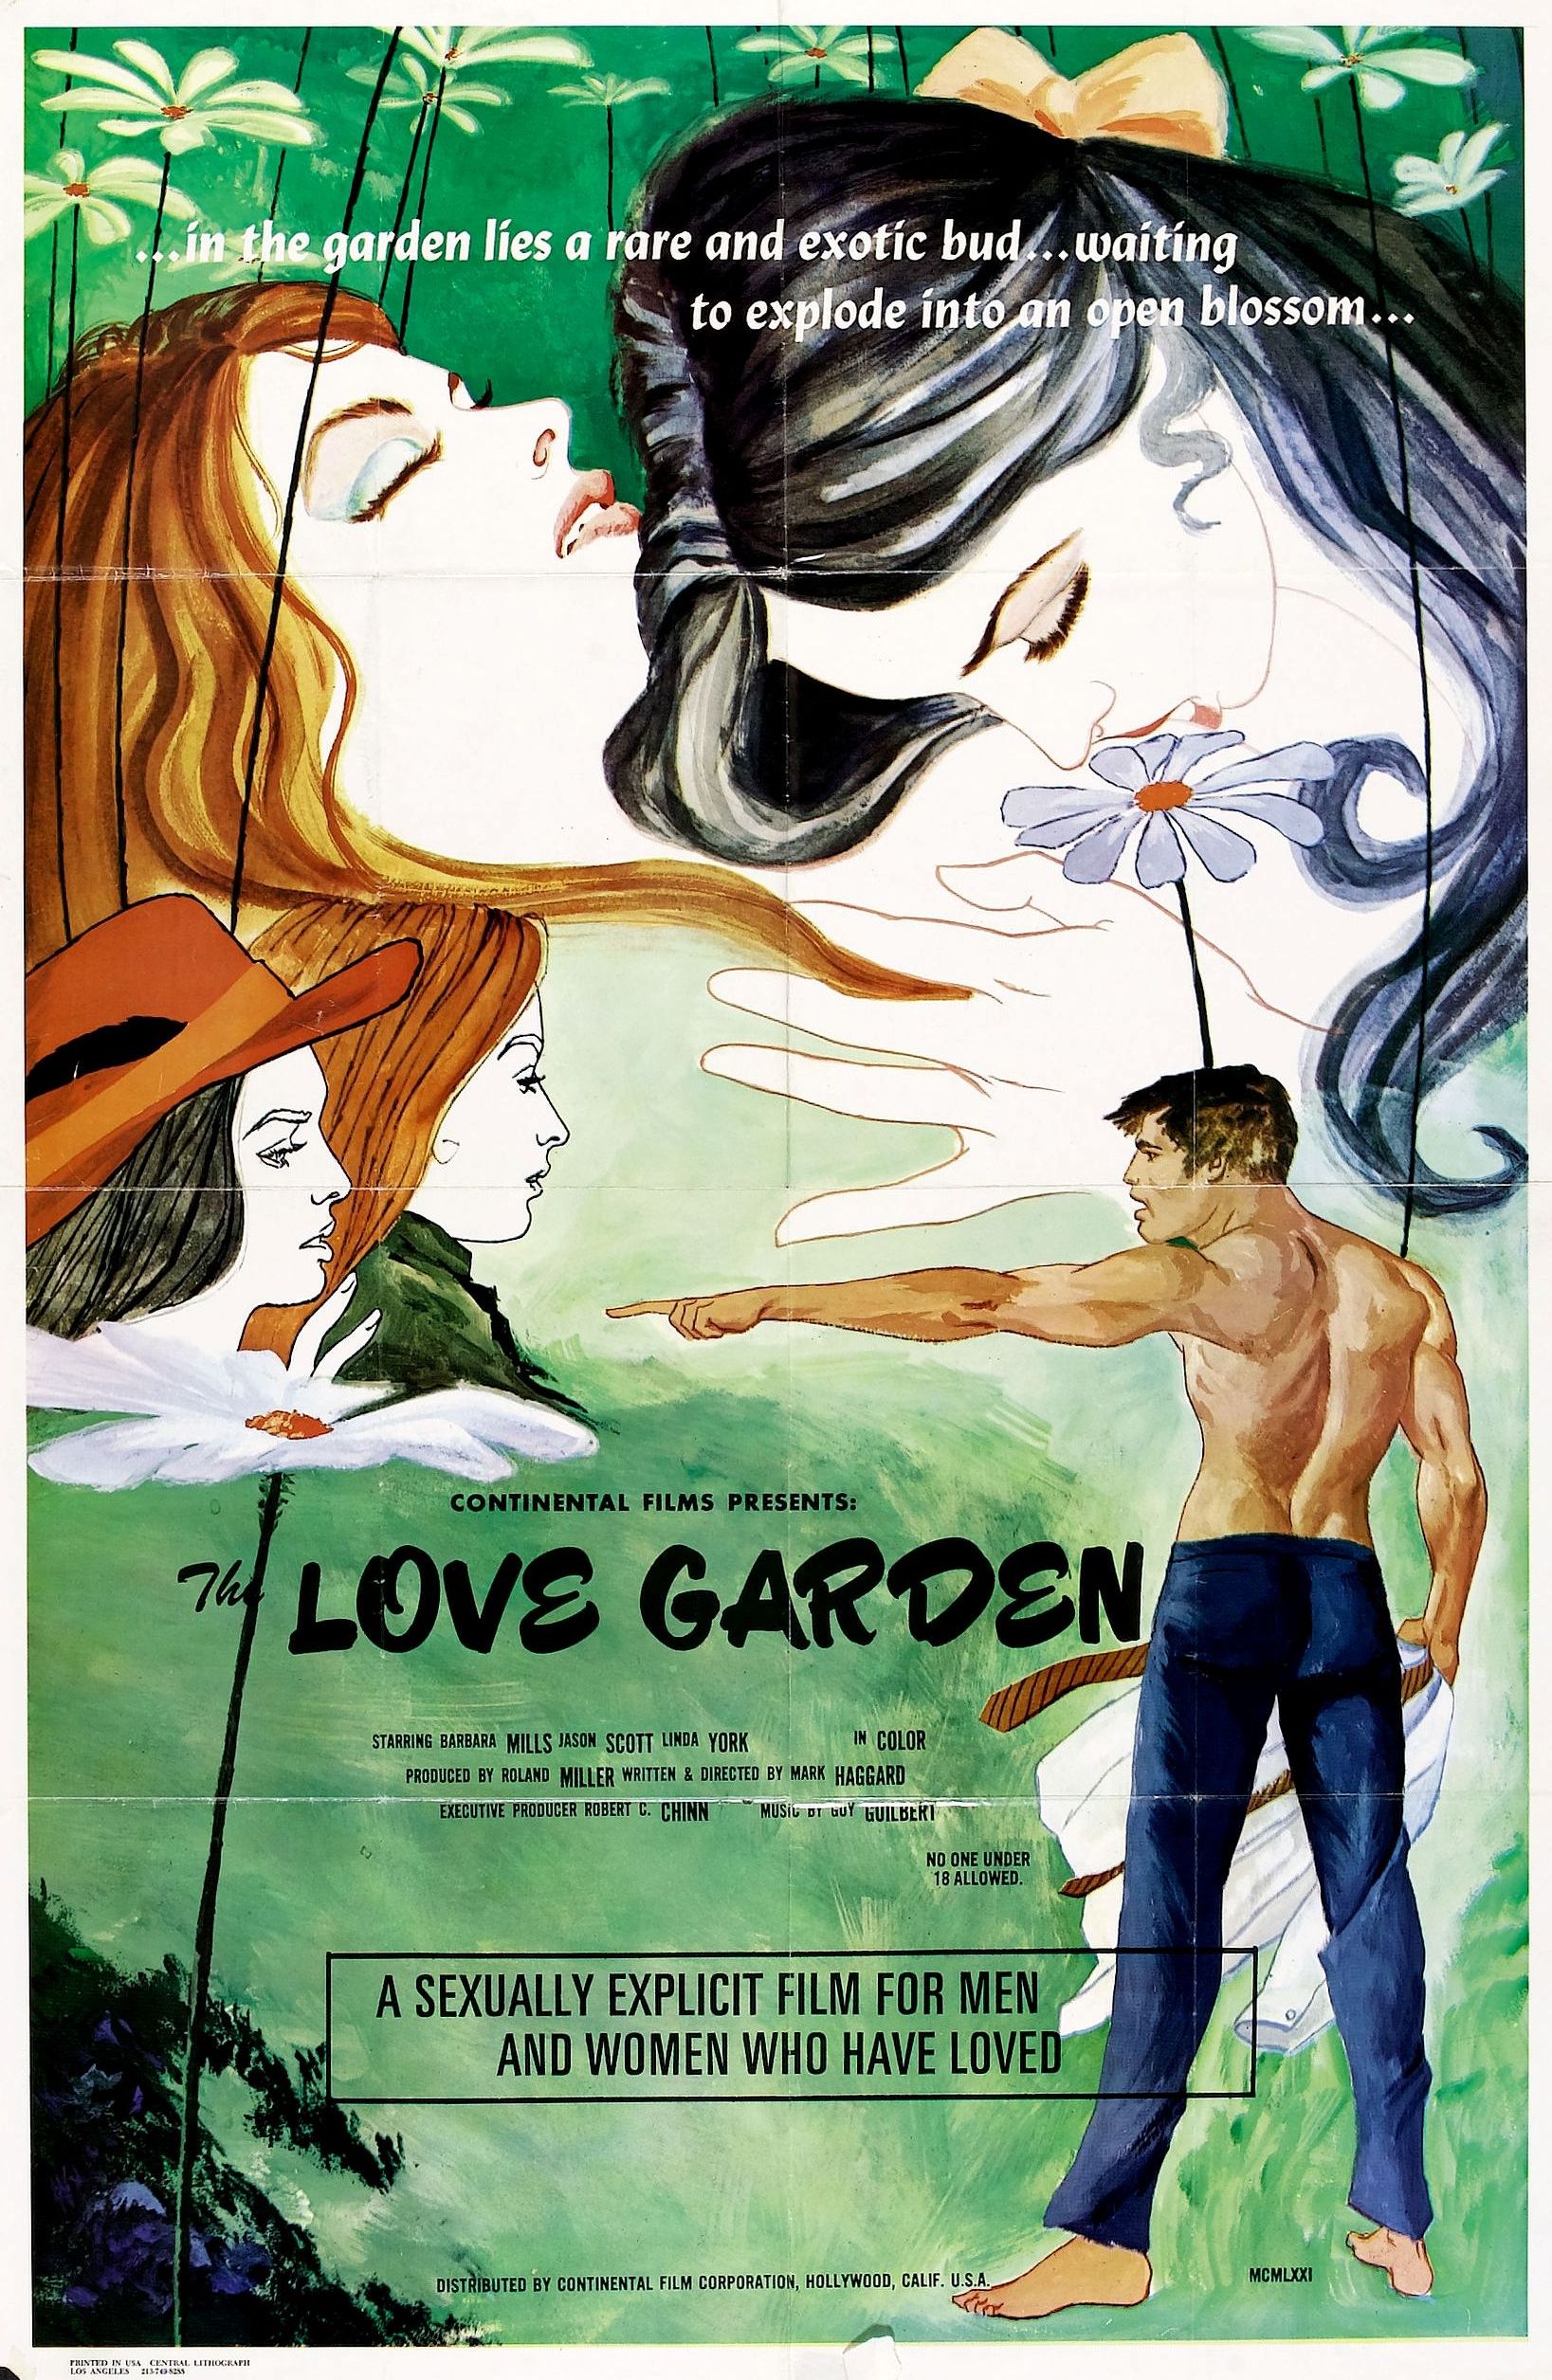 The Love Garden